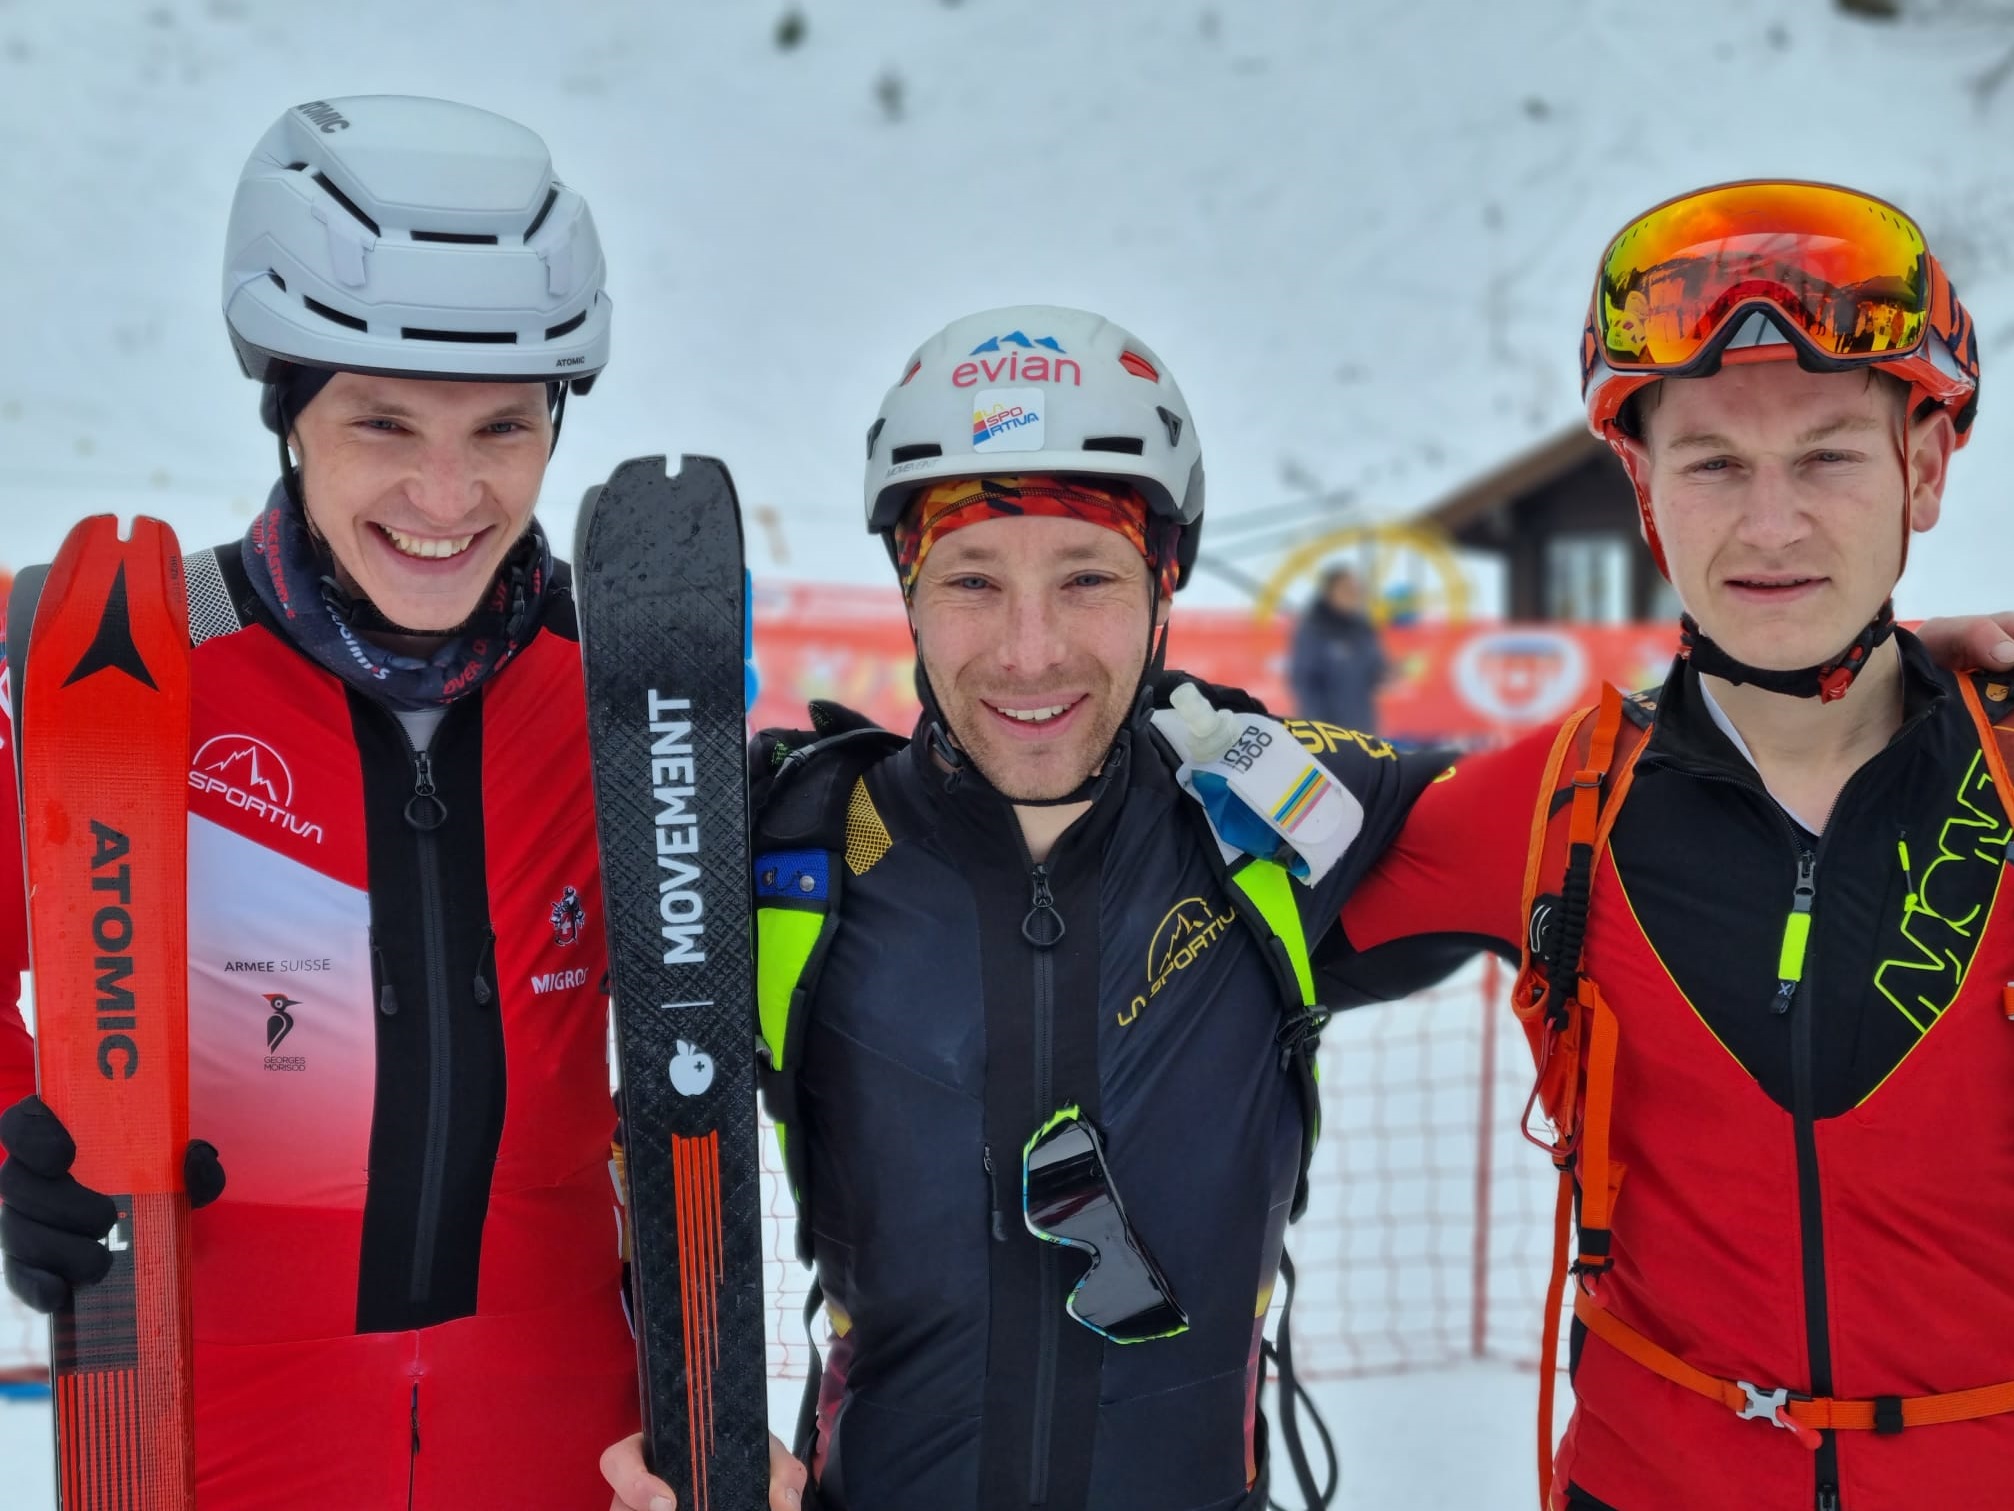 Ski alpinisme: Pierre Mettan sacré champion de Suisse de l'individuelle à Torgon